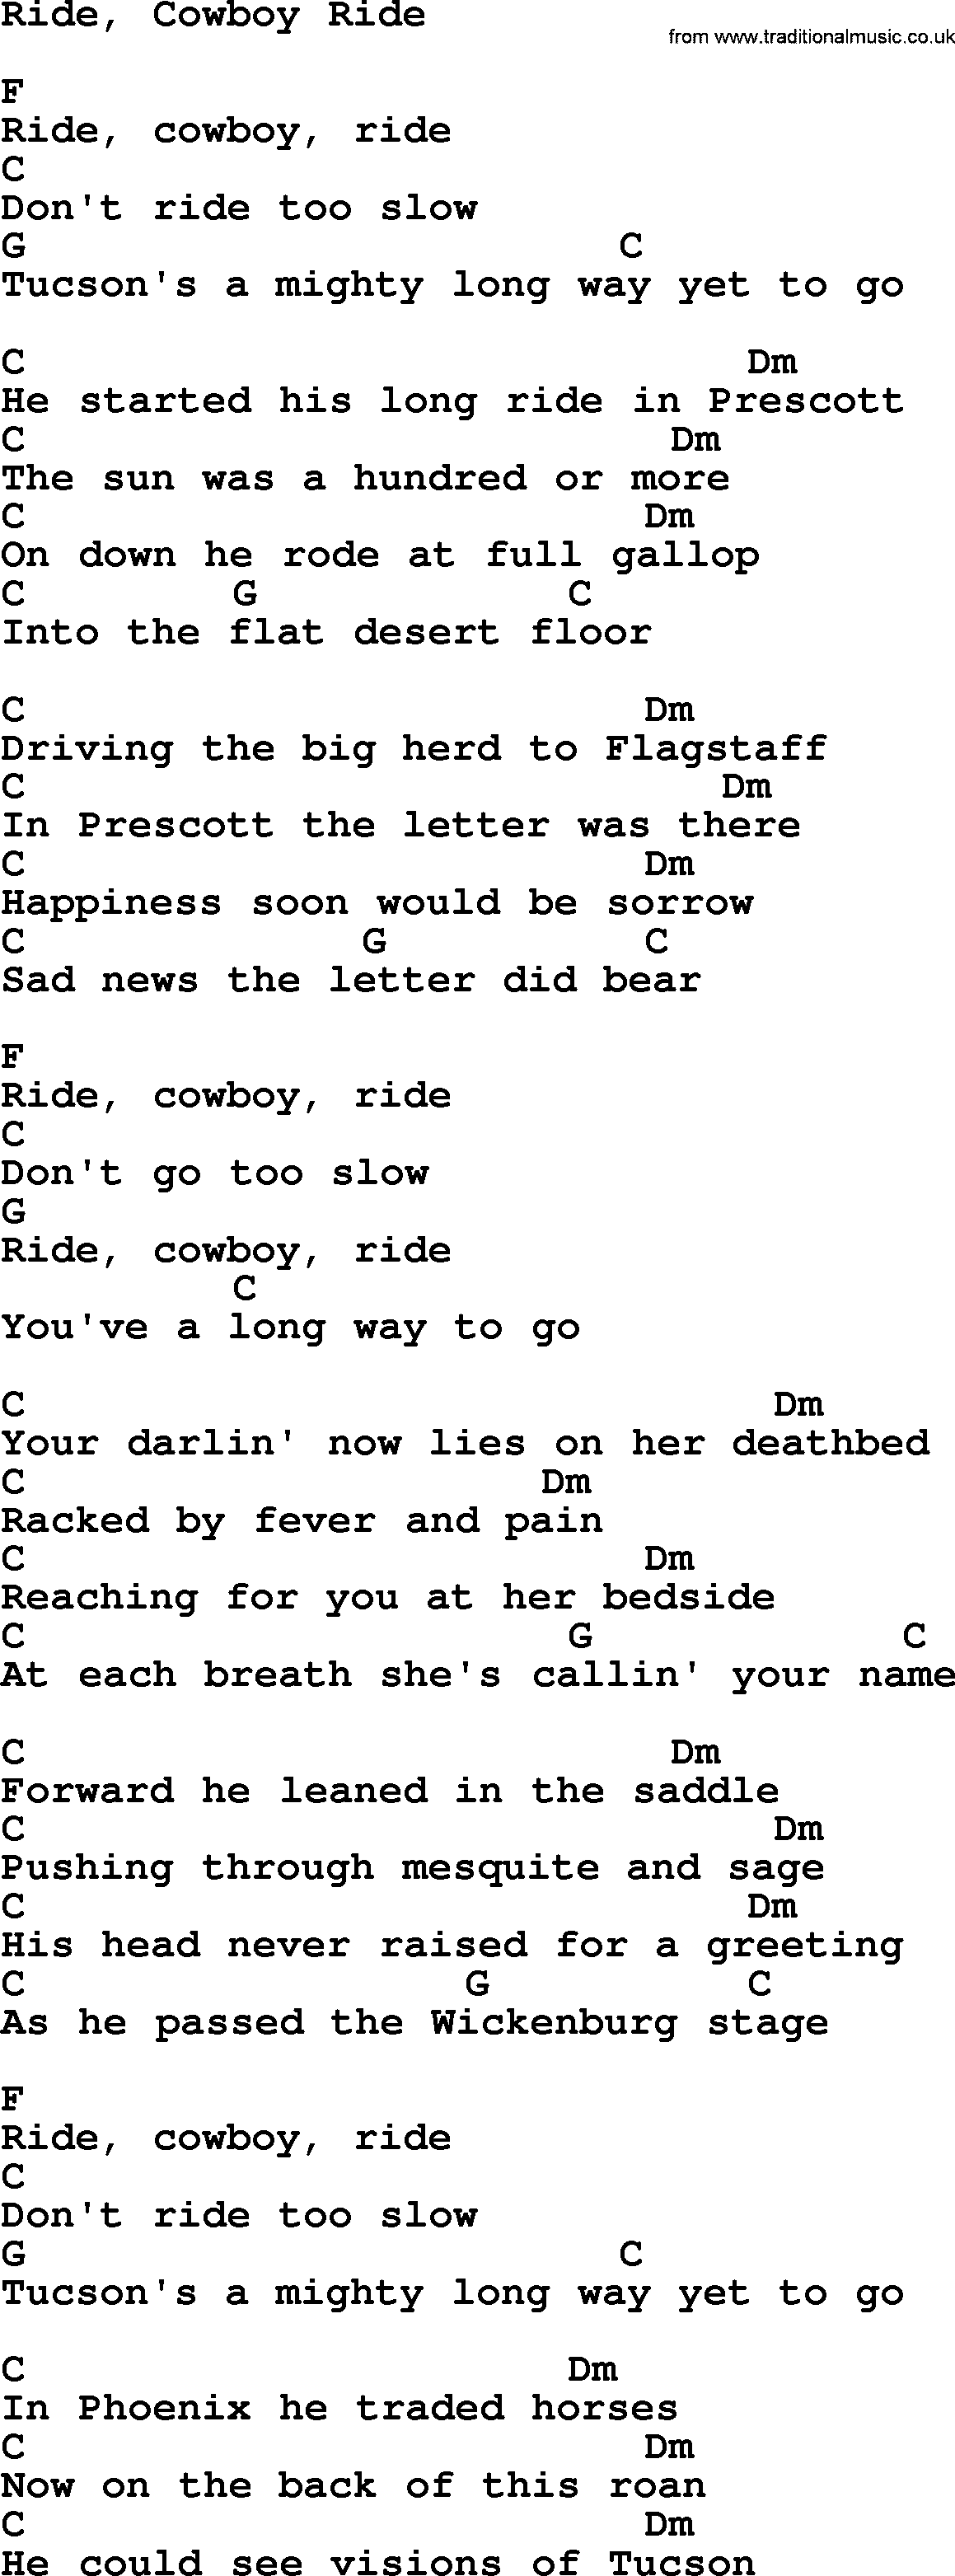 Marty Robbins song: Ride, Cowboy Ride, lyrics and chords